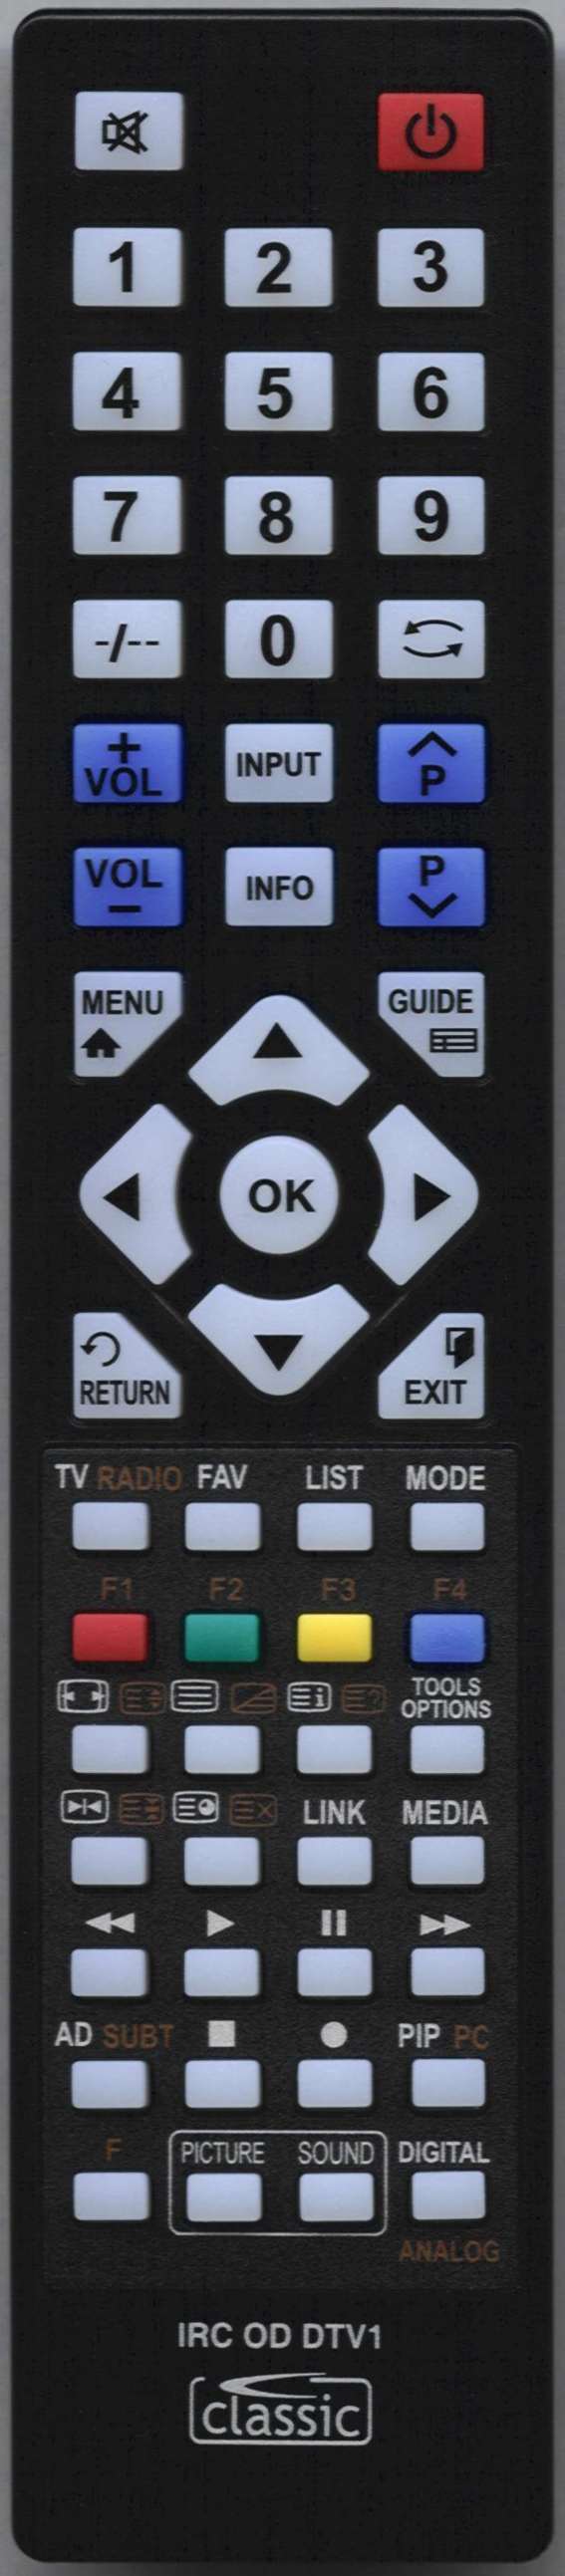 Hisense PDP 4219EU Remote Control